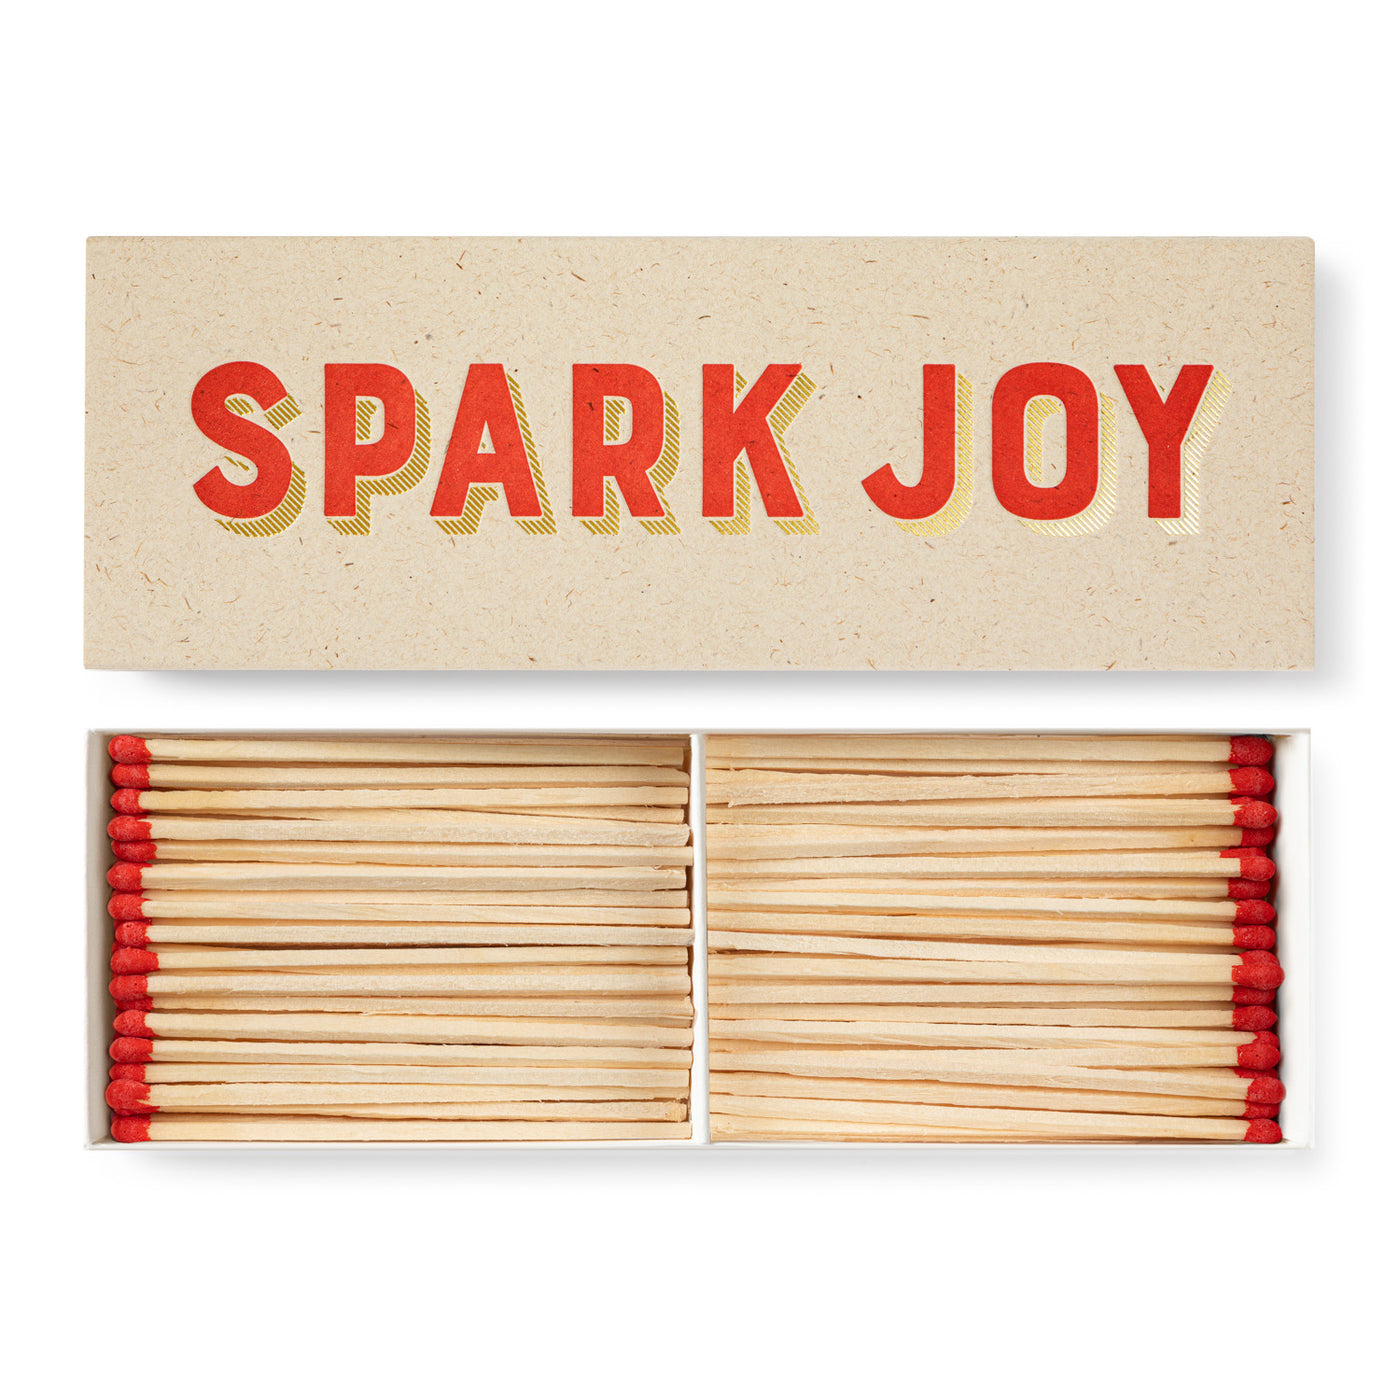 Spark Joy Long Matches